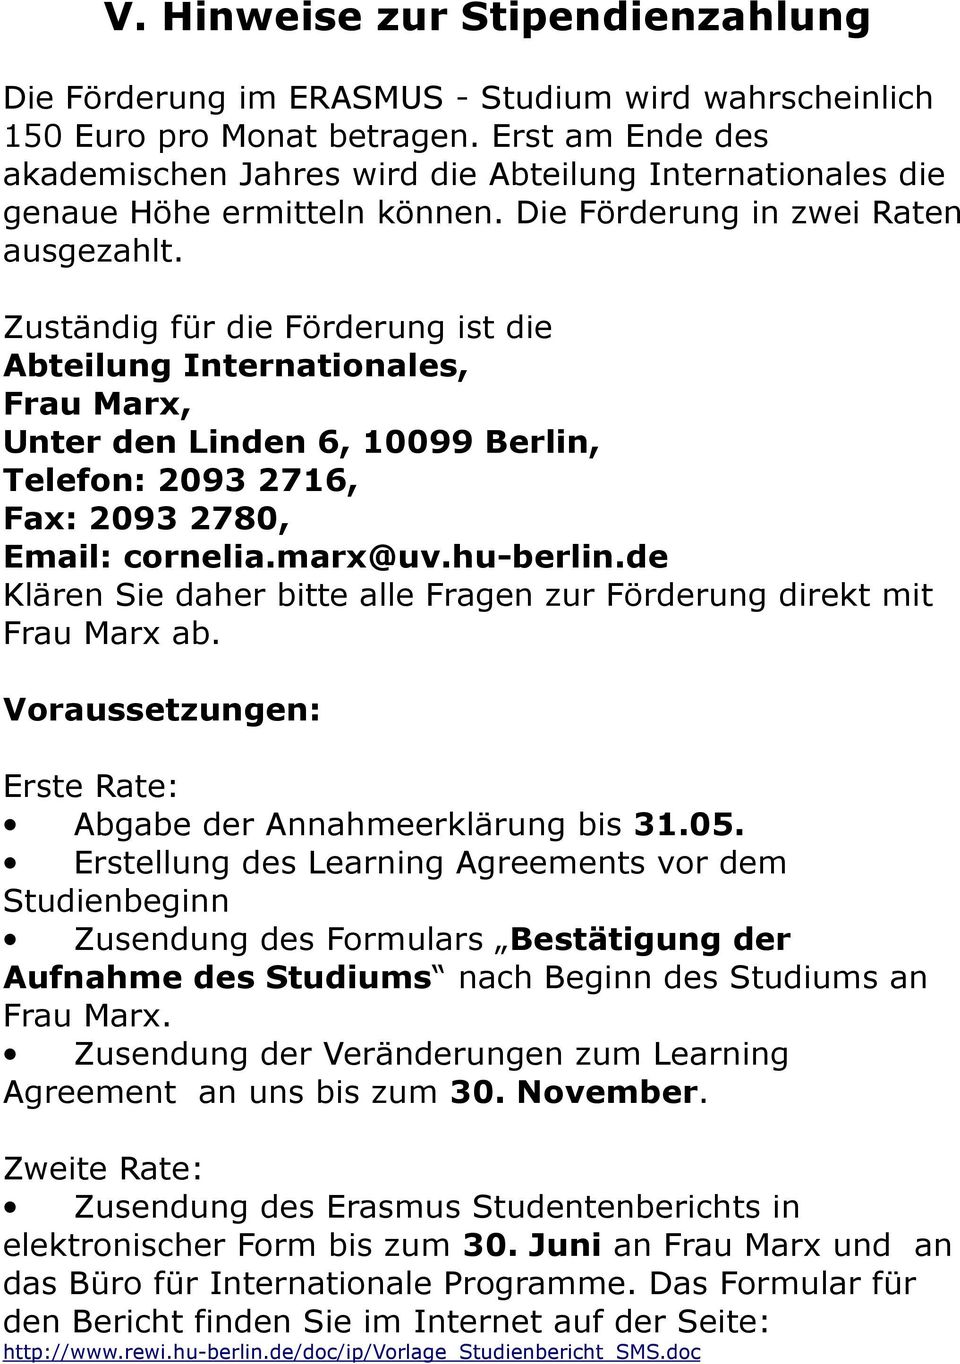 Zuständig für die Förderung ist die Abteilung Internationales, Frau Marx, Unter den Linden 6, 10099 Berlin, Telefon: 2093 2716, Fax: 2093 2780, Email: cornelia.marx@uv.hu-berlin.